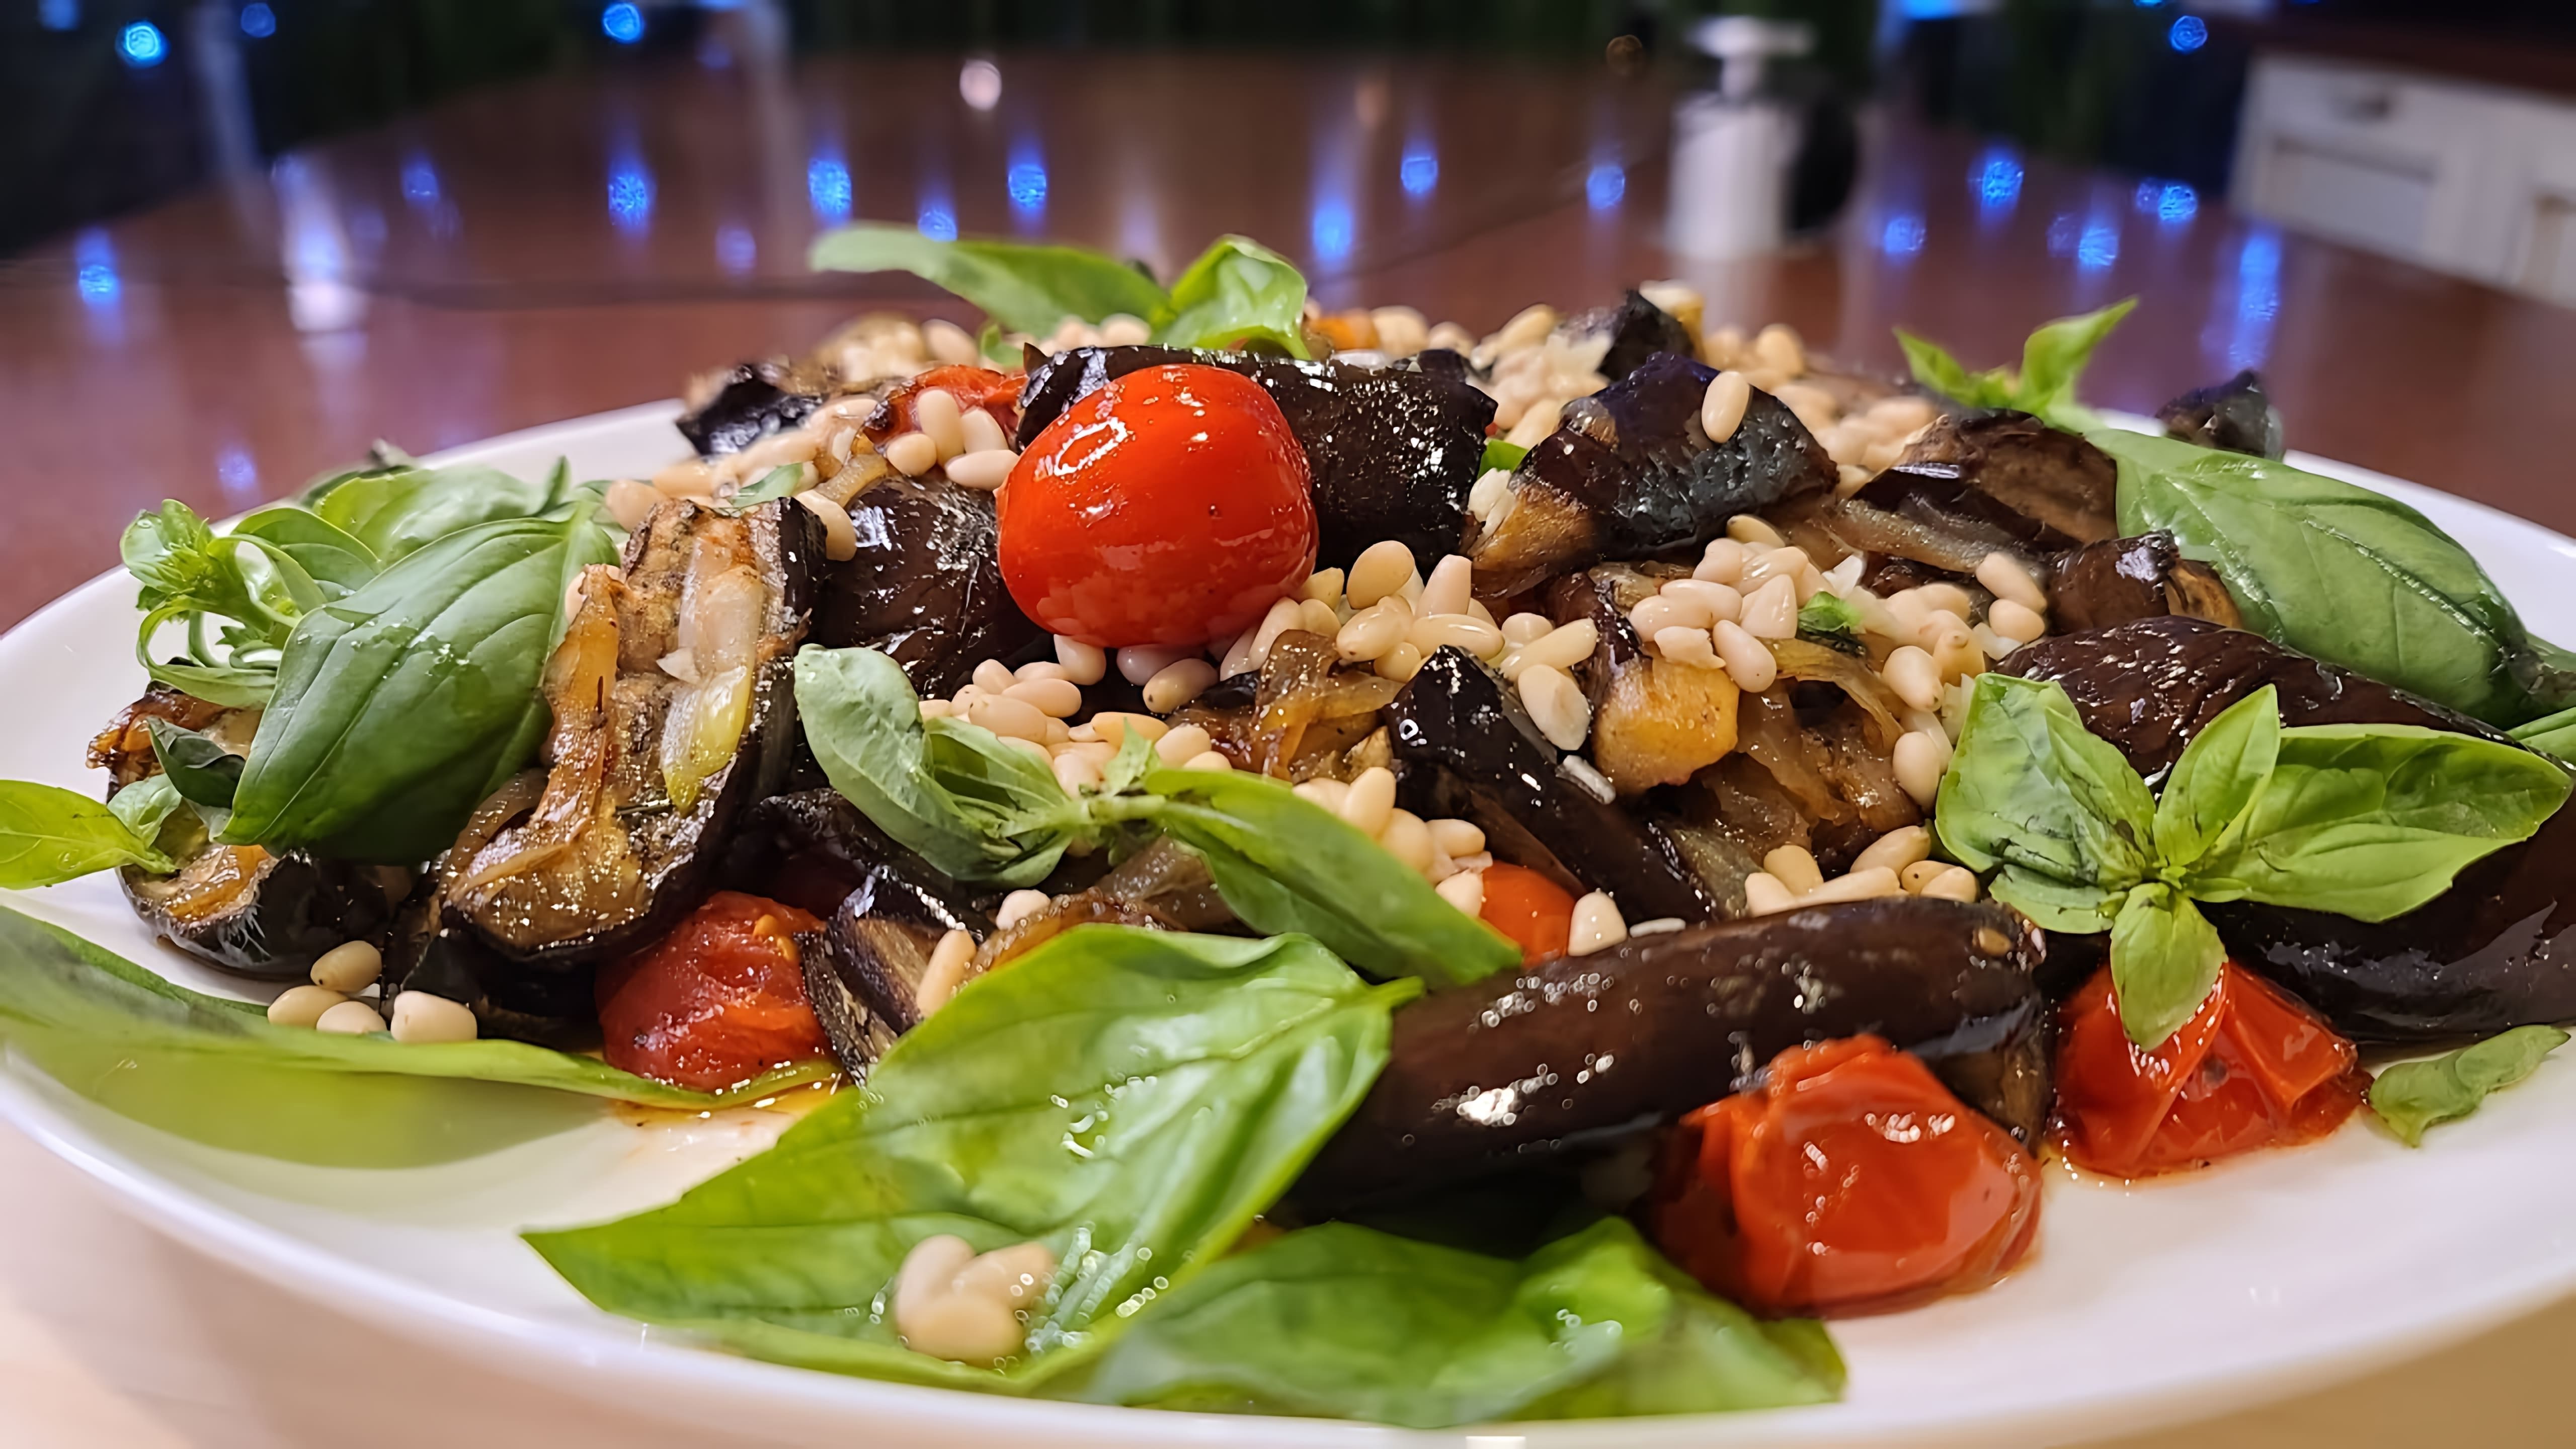 В этом видео демонстрируется рецепт салата из баклажанов, который является фаворитом на праздничном столе